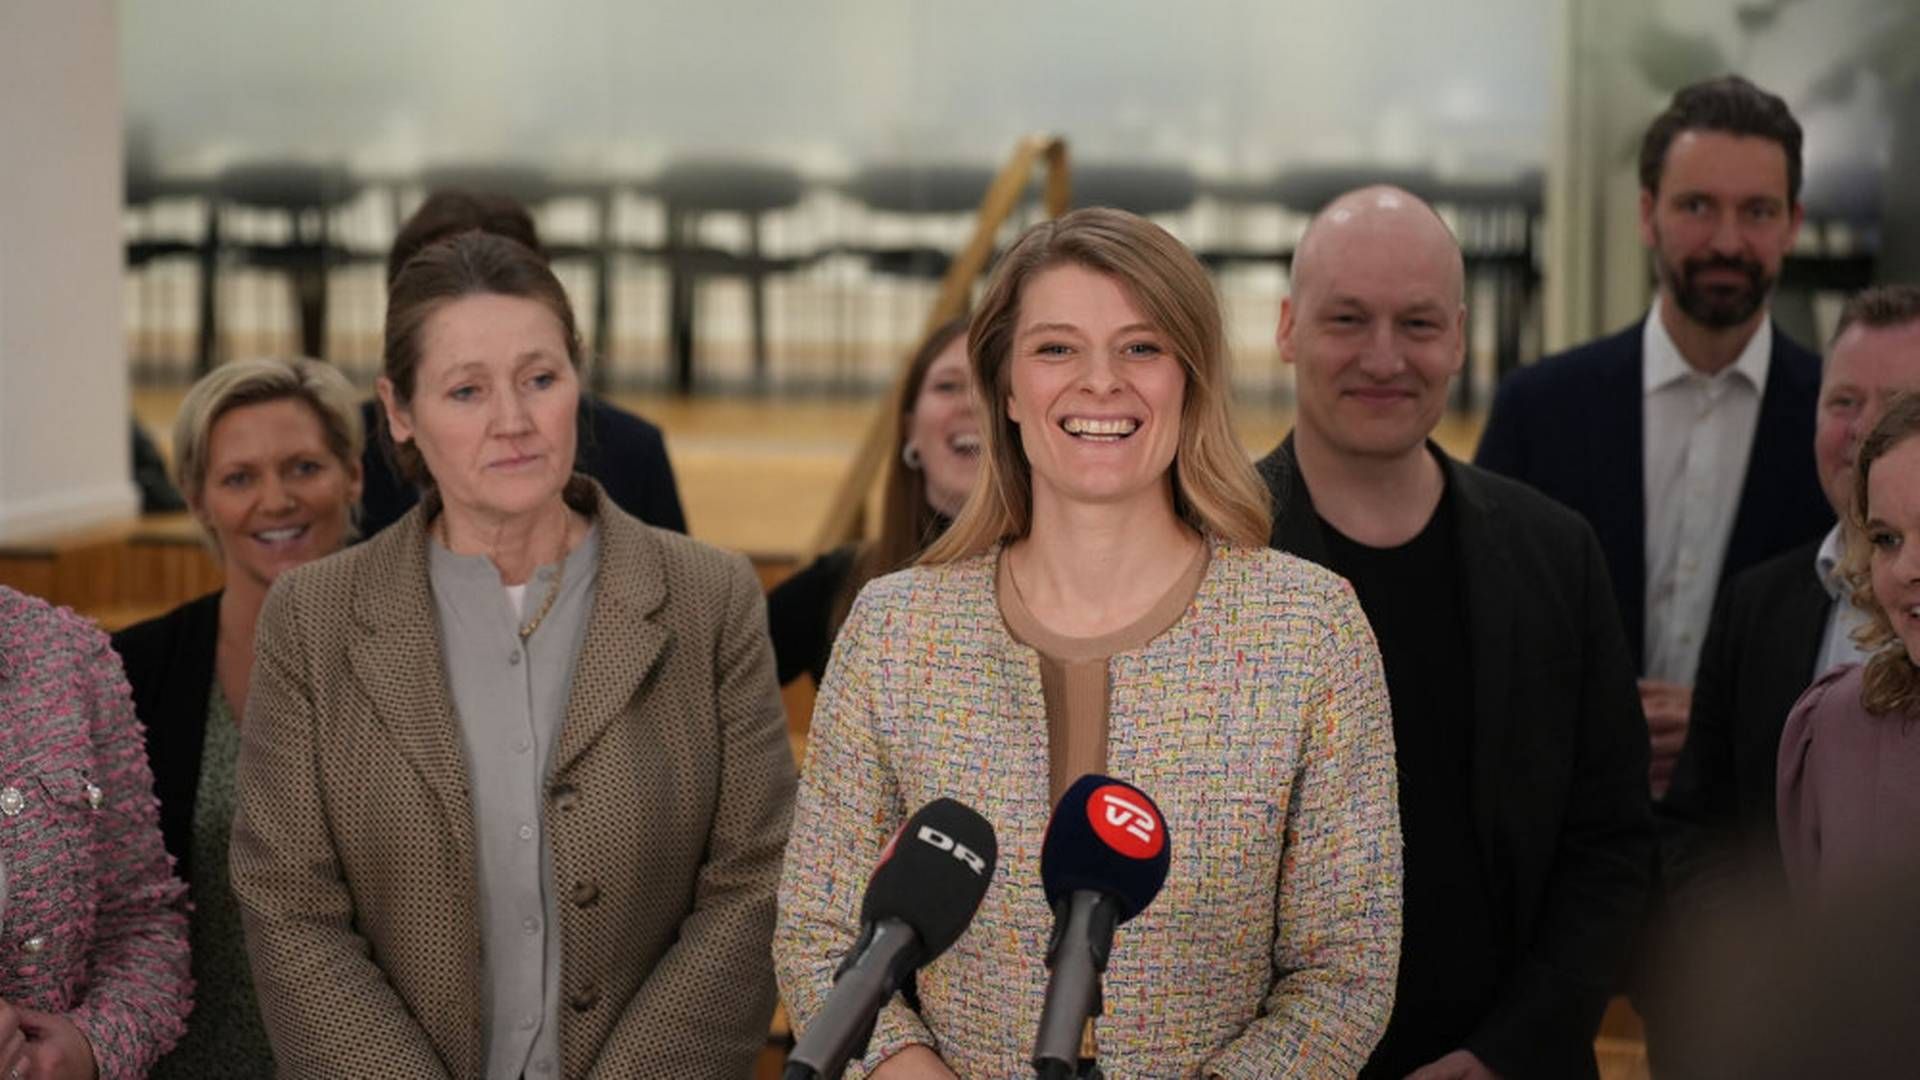 Beskæftigelsesminister Ane Halsboe-Jørgensen (S) og samtlige af Folketingets partier var repræsenteret ved pressemødet, hvor de præsenterede den nye arbejdsmiljøaftale | Foto: Emil Helms / Ritzau Scanpix